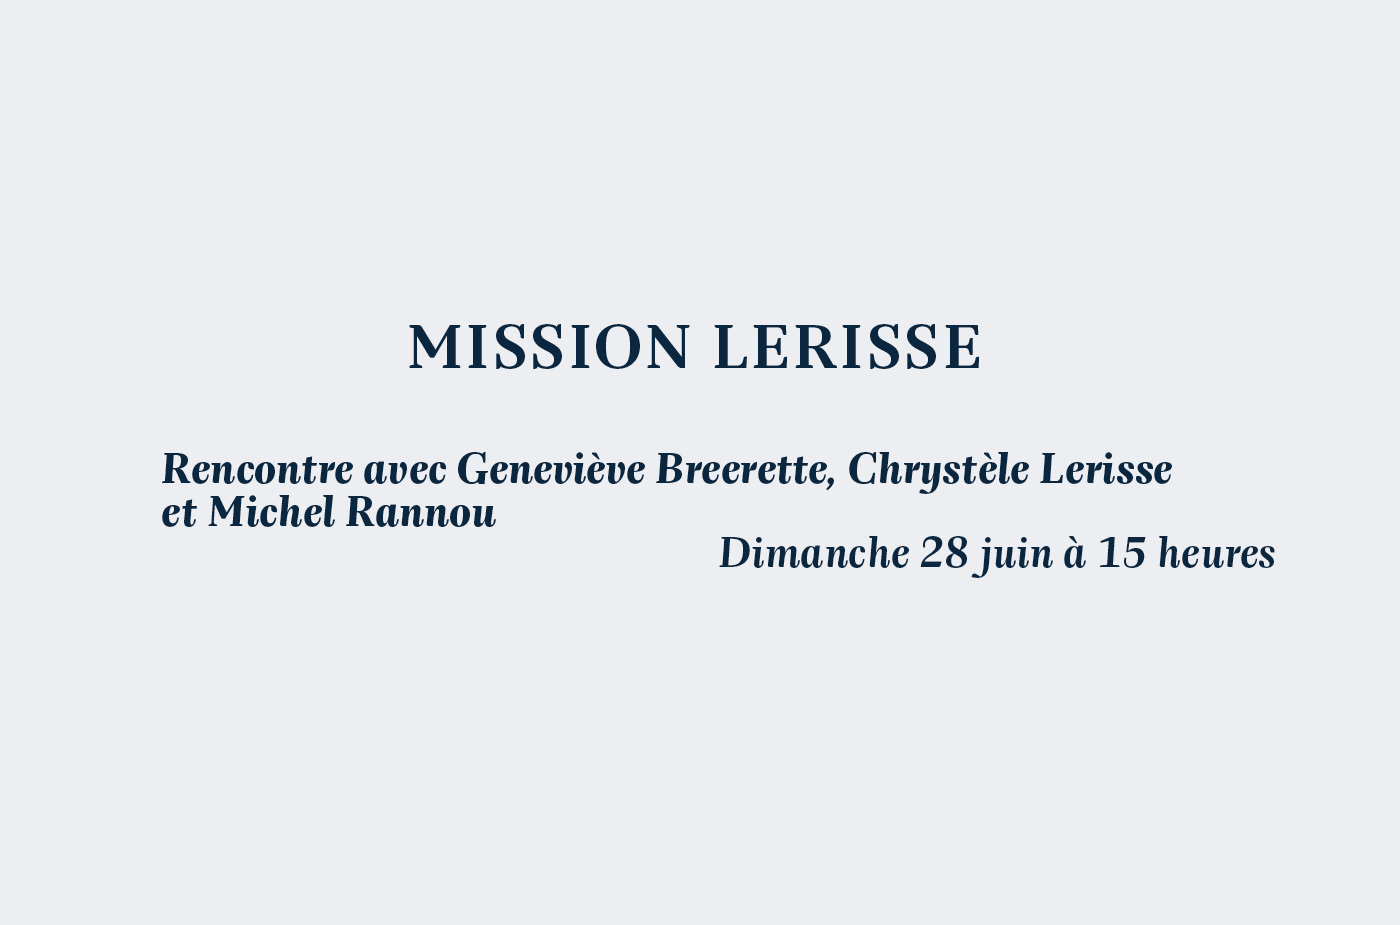 Rencontre avec Geneviève Breerette, Chrystèle Lerisse et Michel Rannou